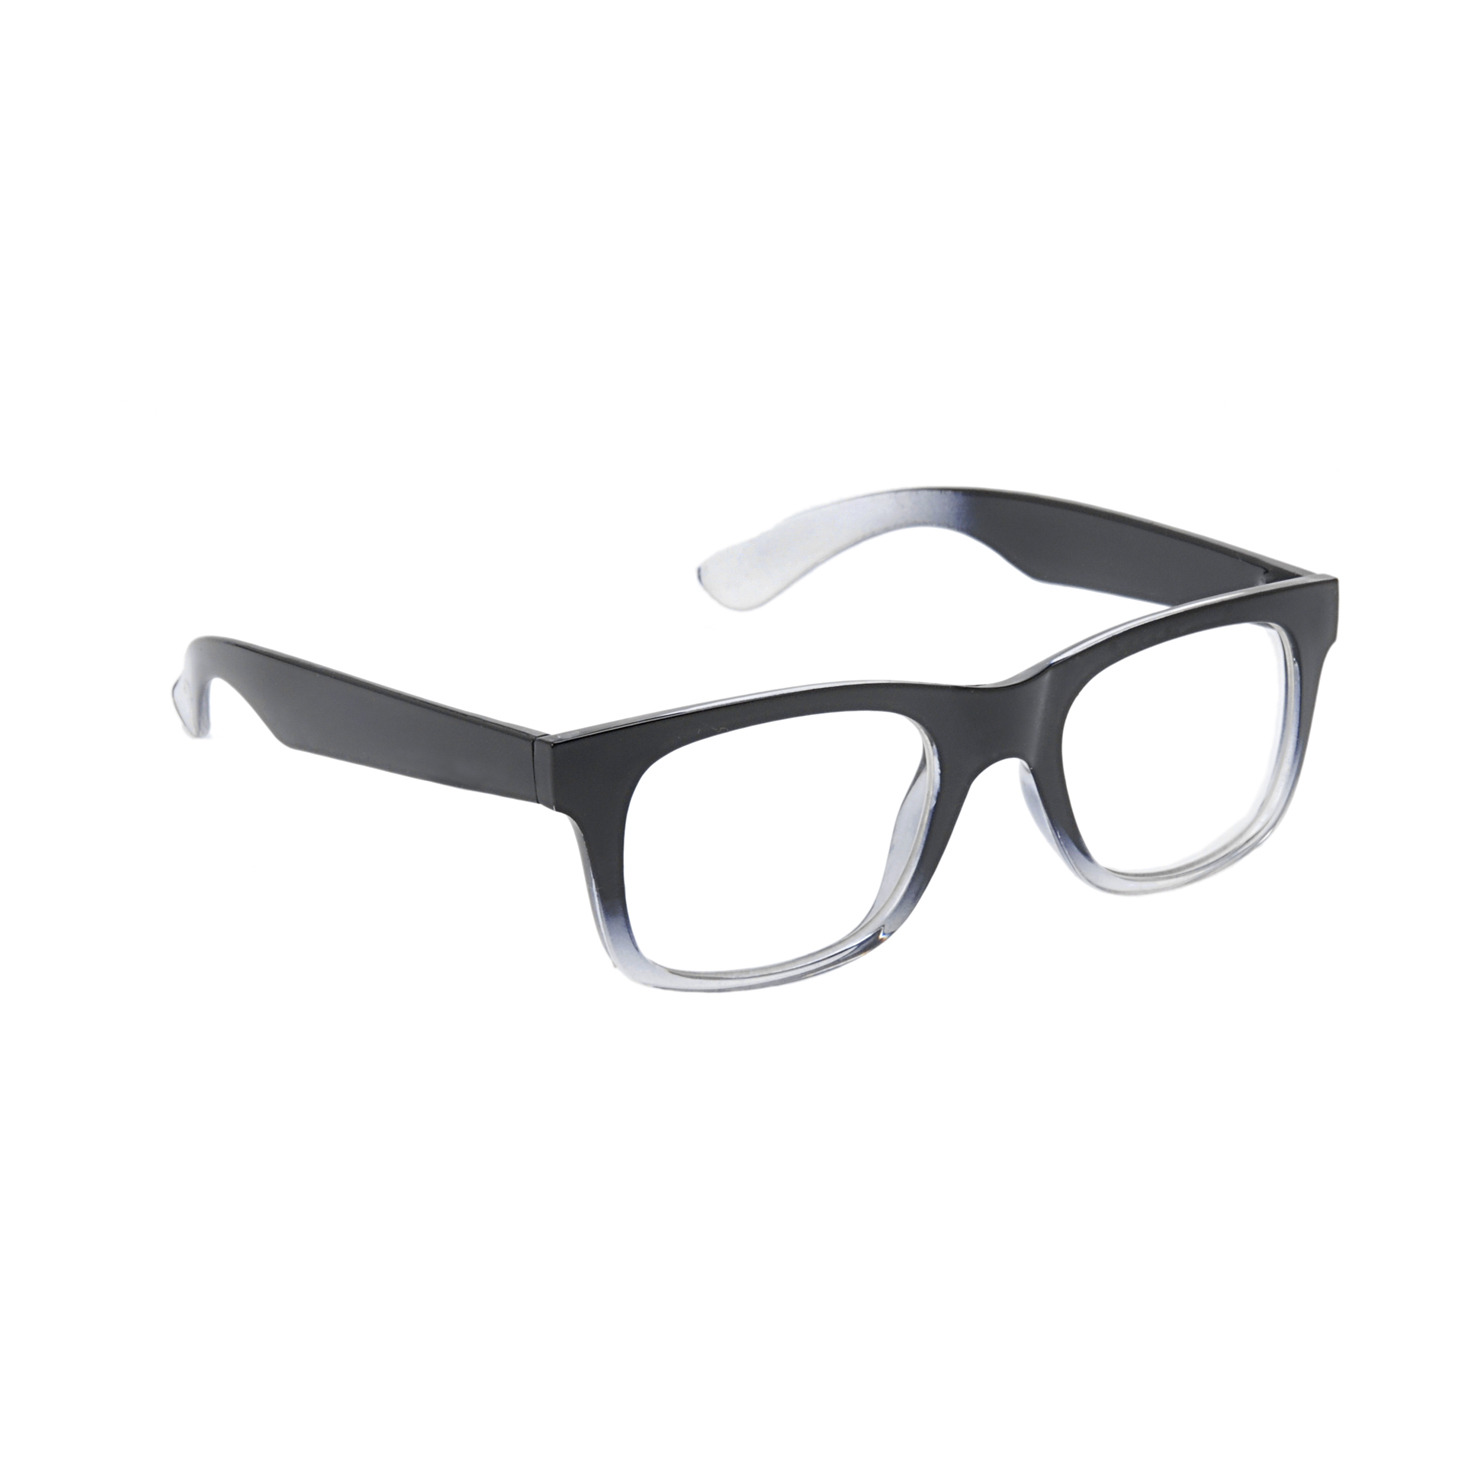 Nerd Geek Glasses Vector